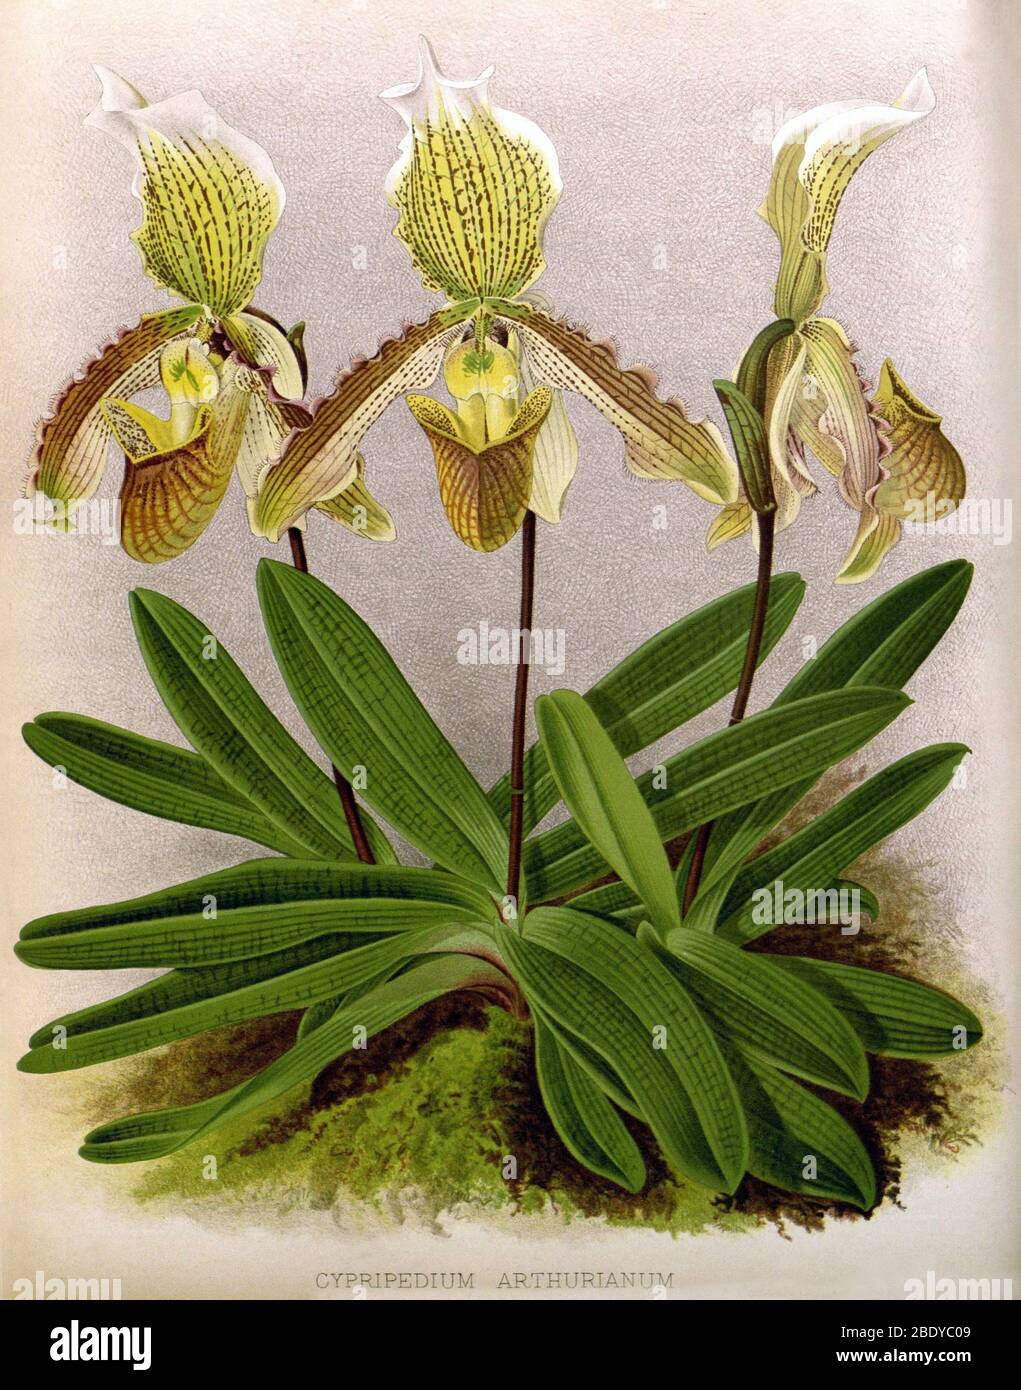 Orchid, Cypripedium arthurianum, 1891 Banque D'Images